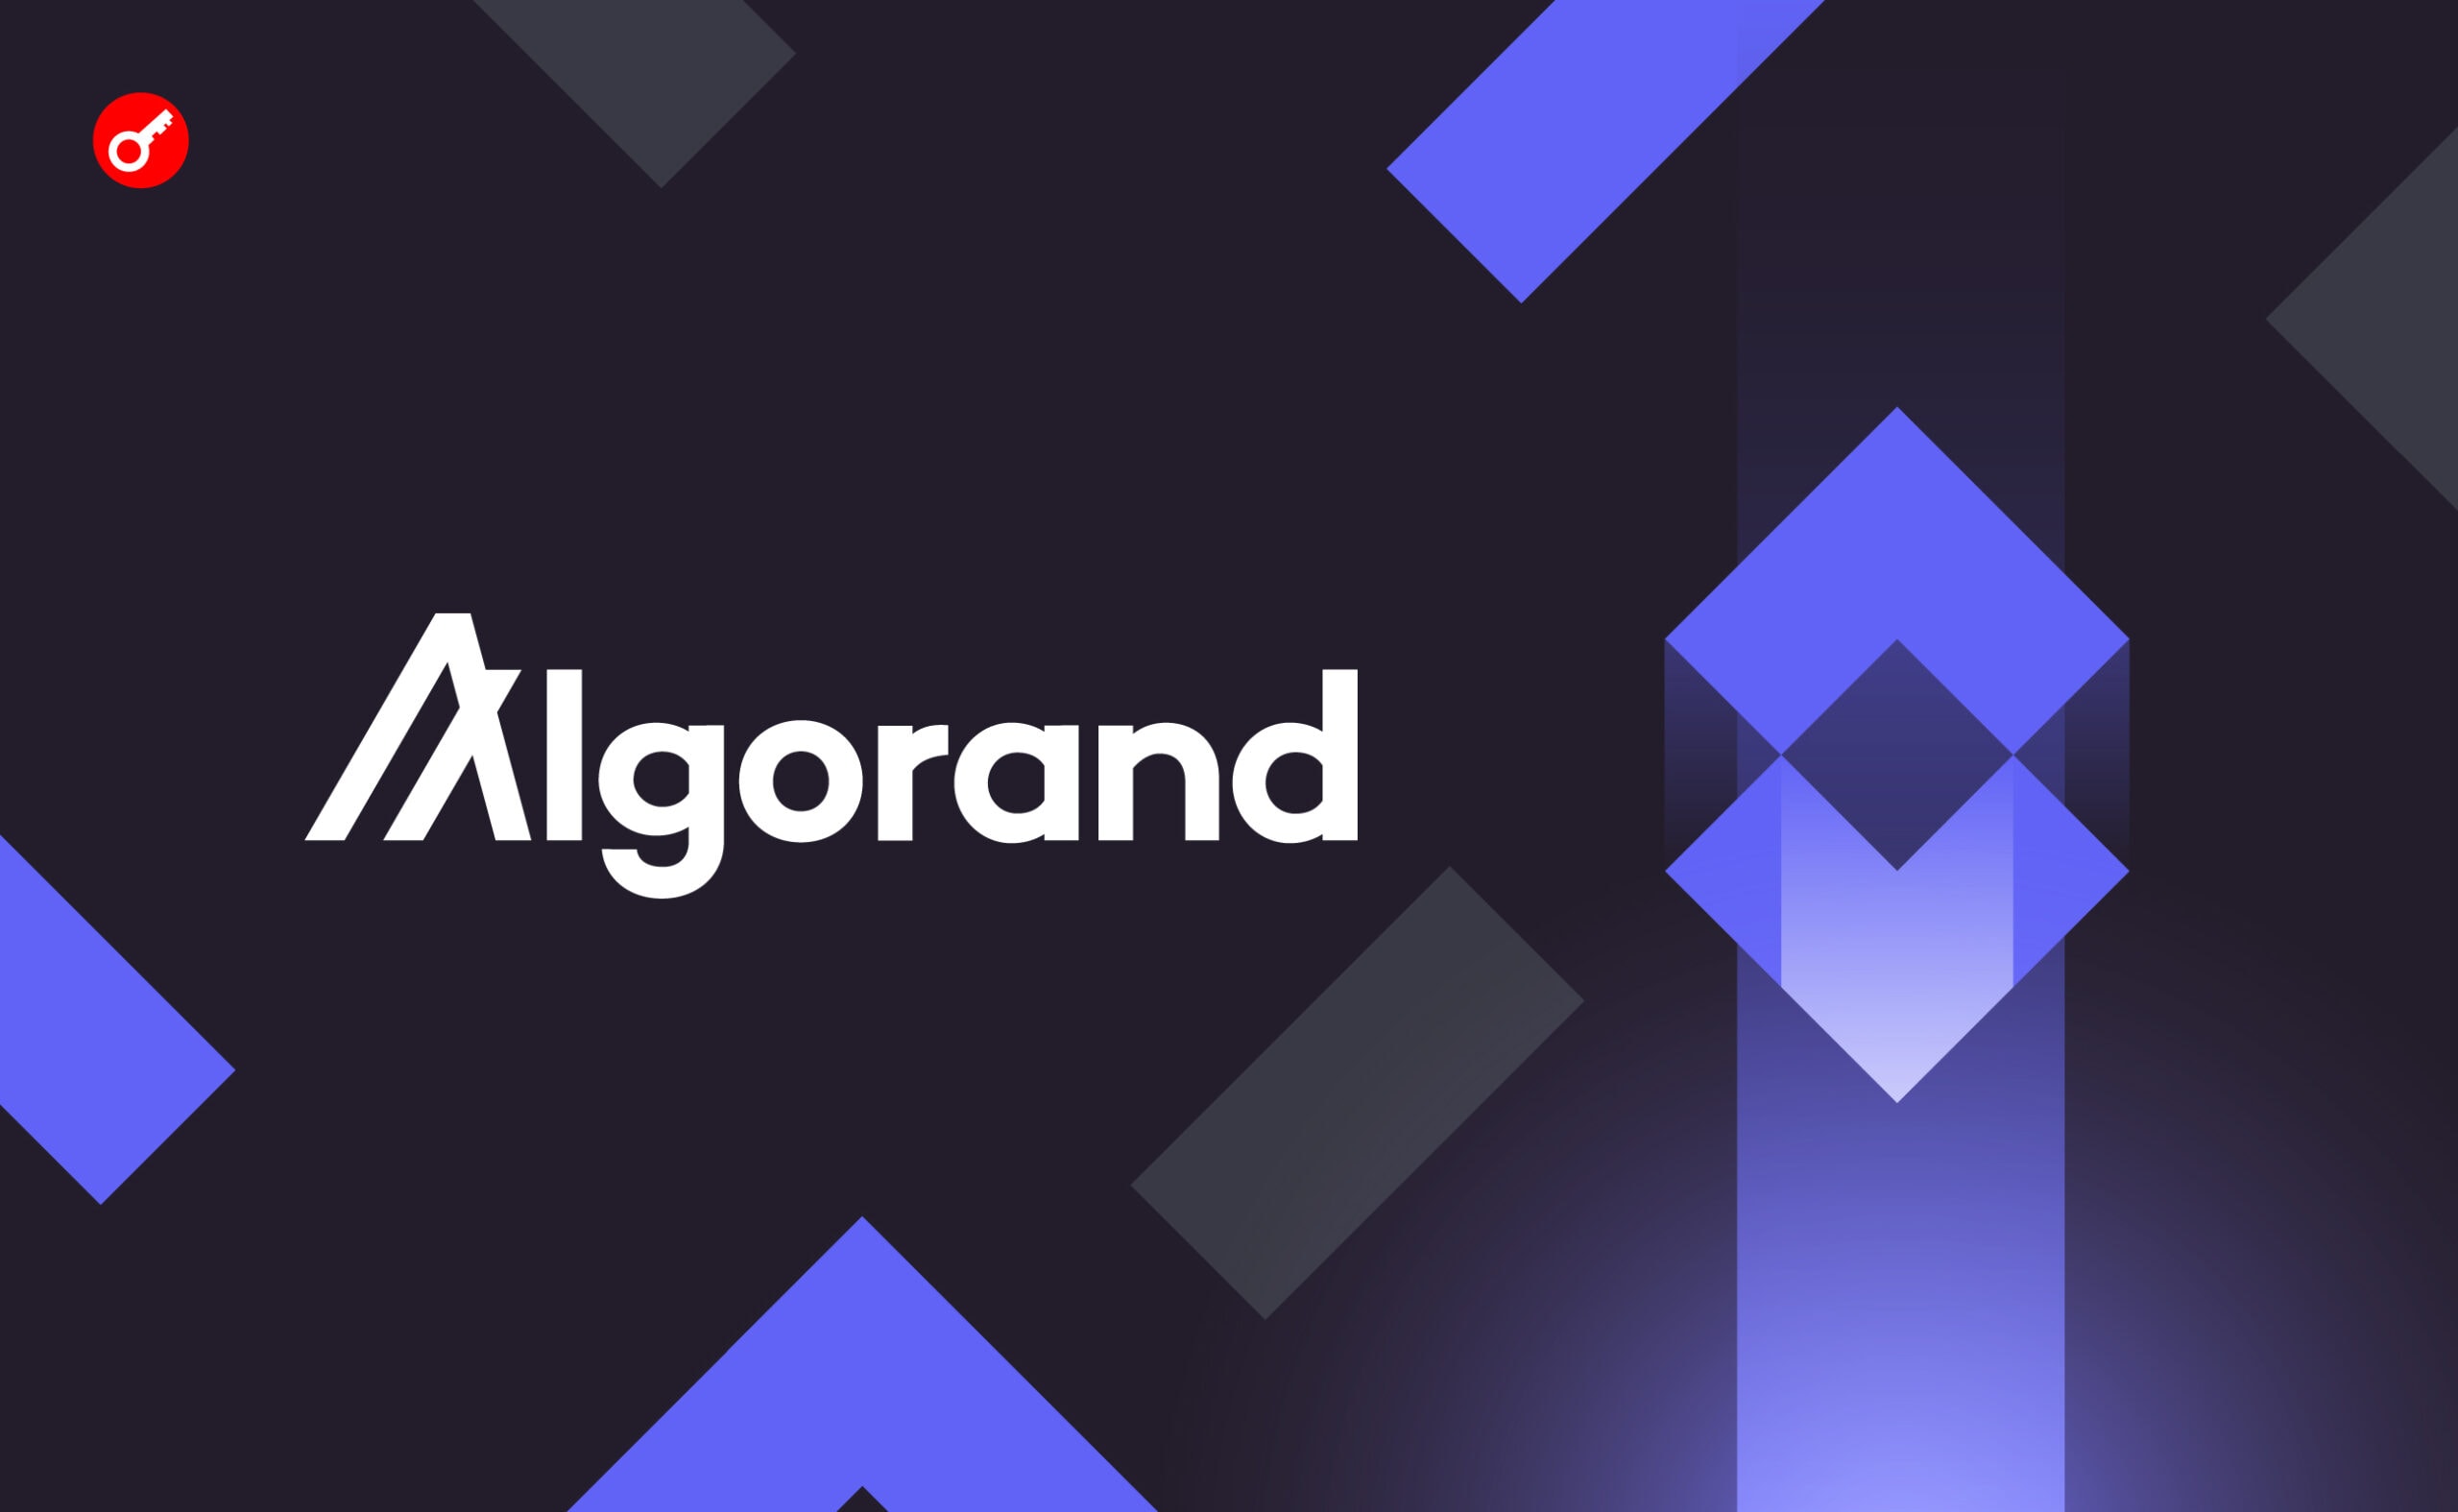 Крупнейший DeFi-протокол на Algorand объявил о прекращении работы. Заглавный коллаж новости.